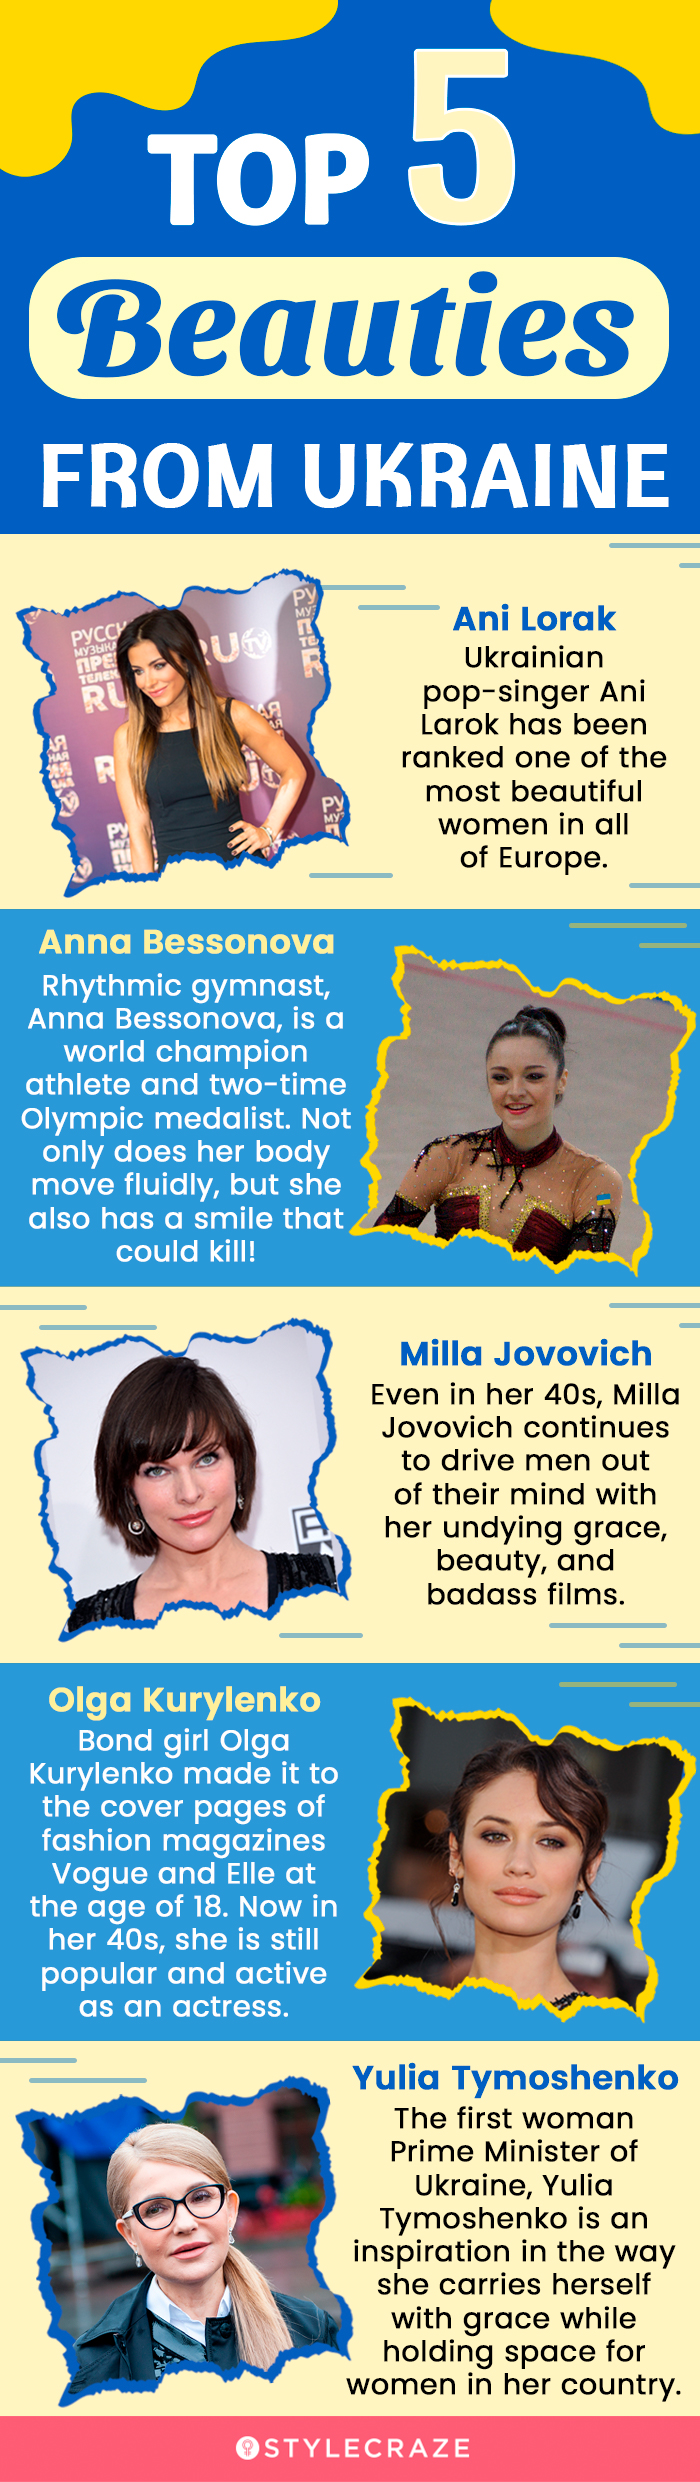 top 5 beauties from ukraine (infographic)